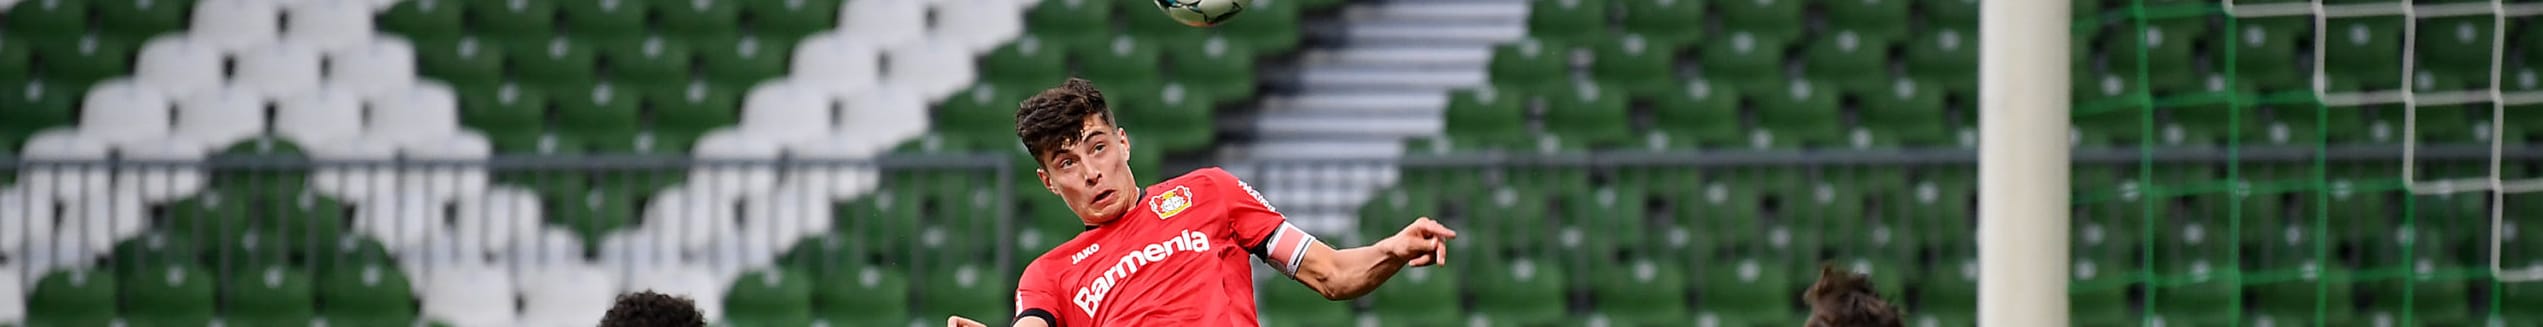 Κάι Χάβερτς: Ο επόμενος μεγάλος σταρ της Bundesliga!